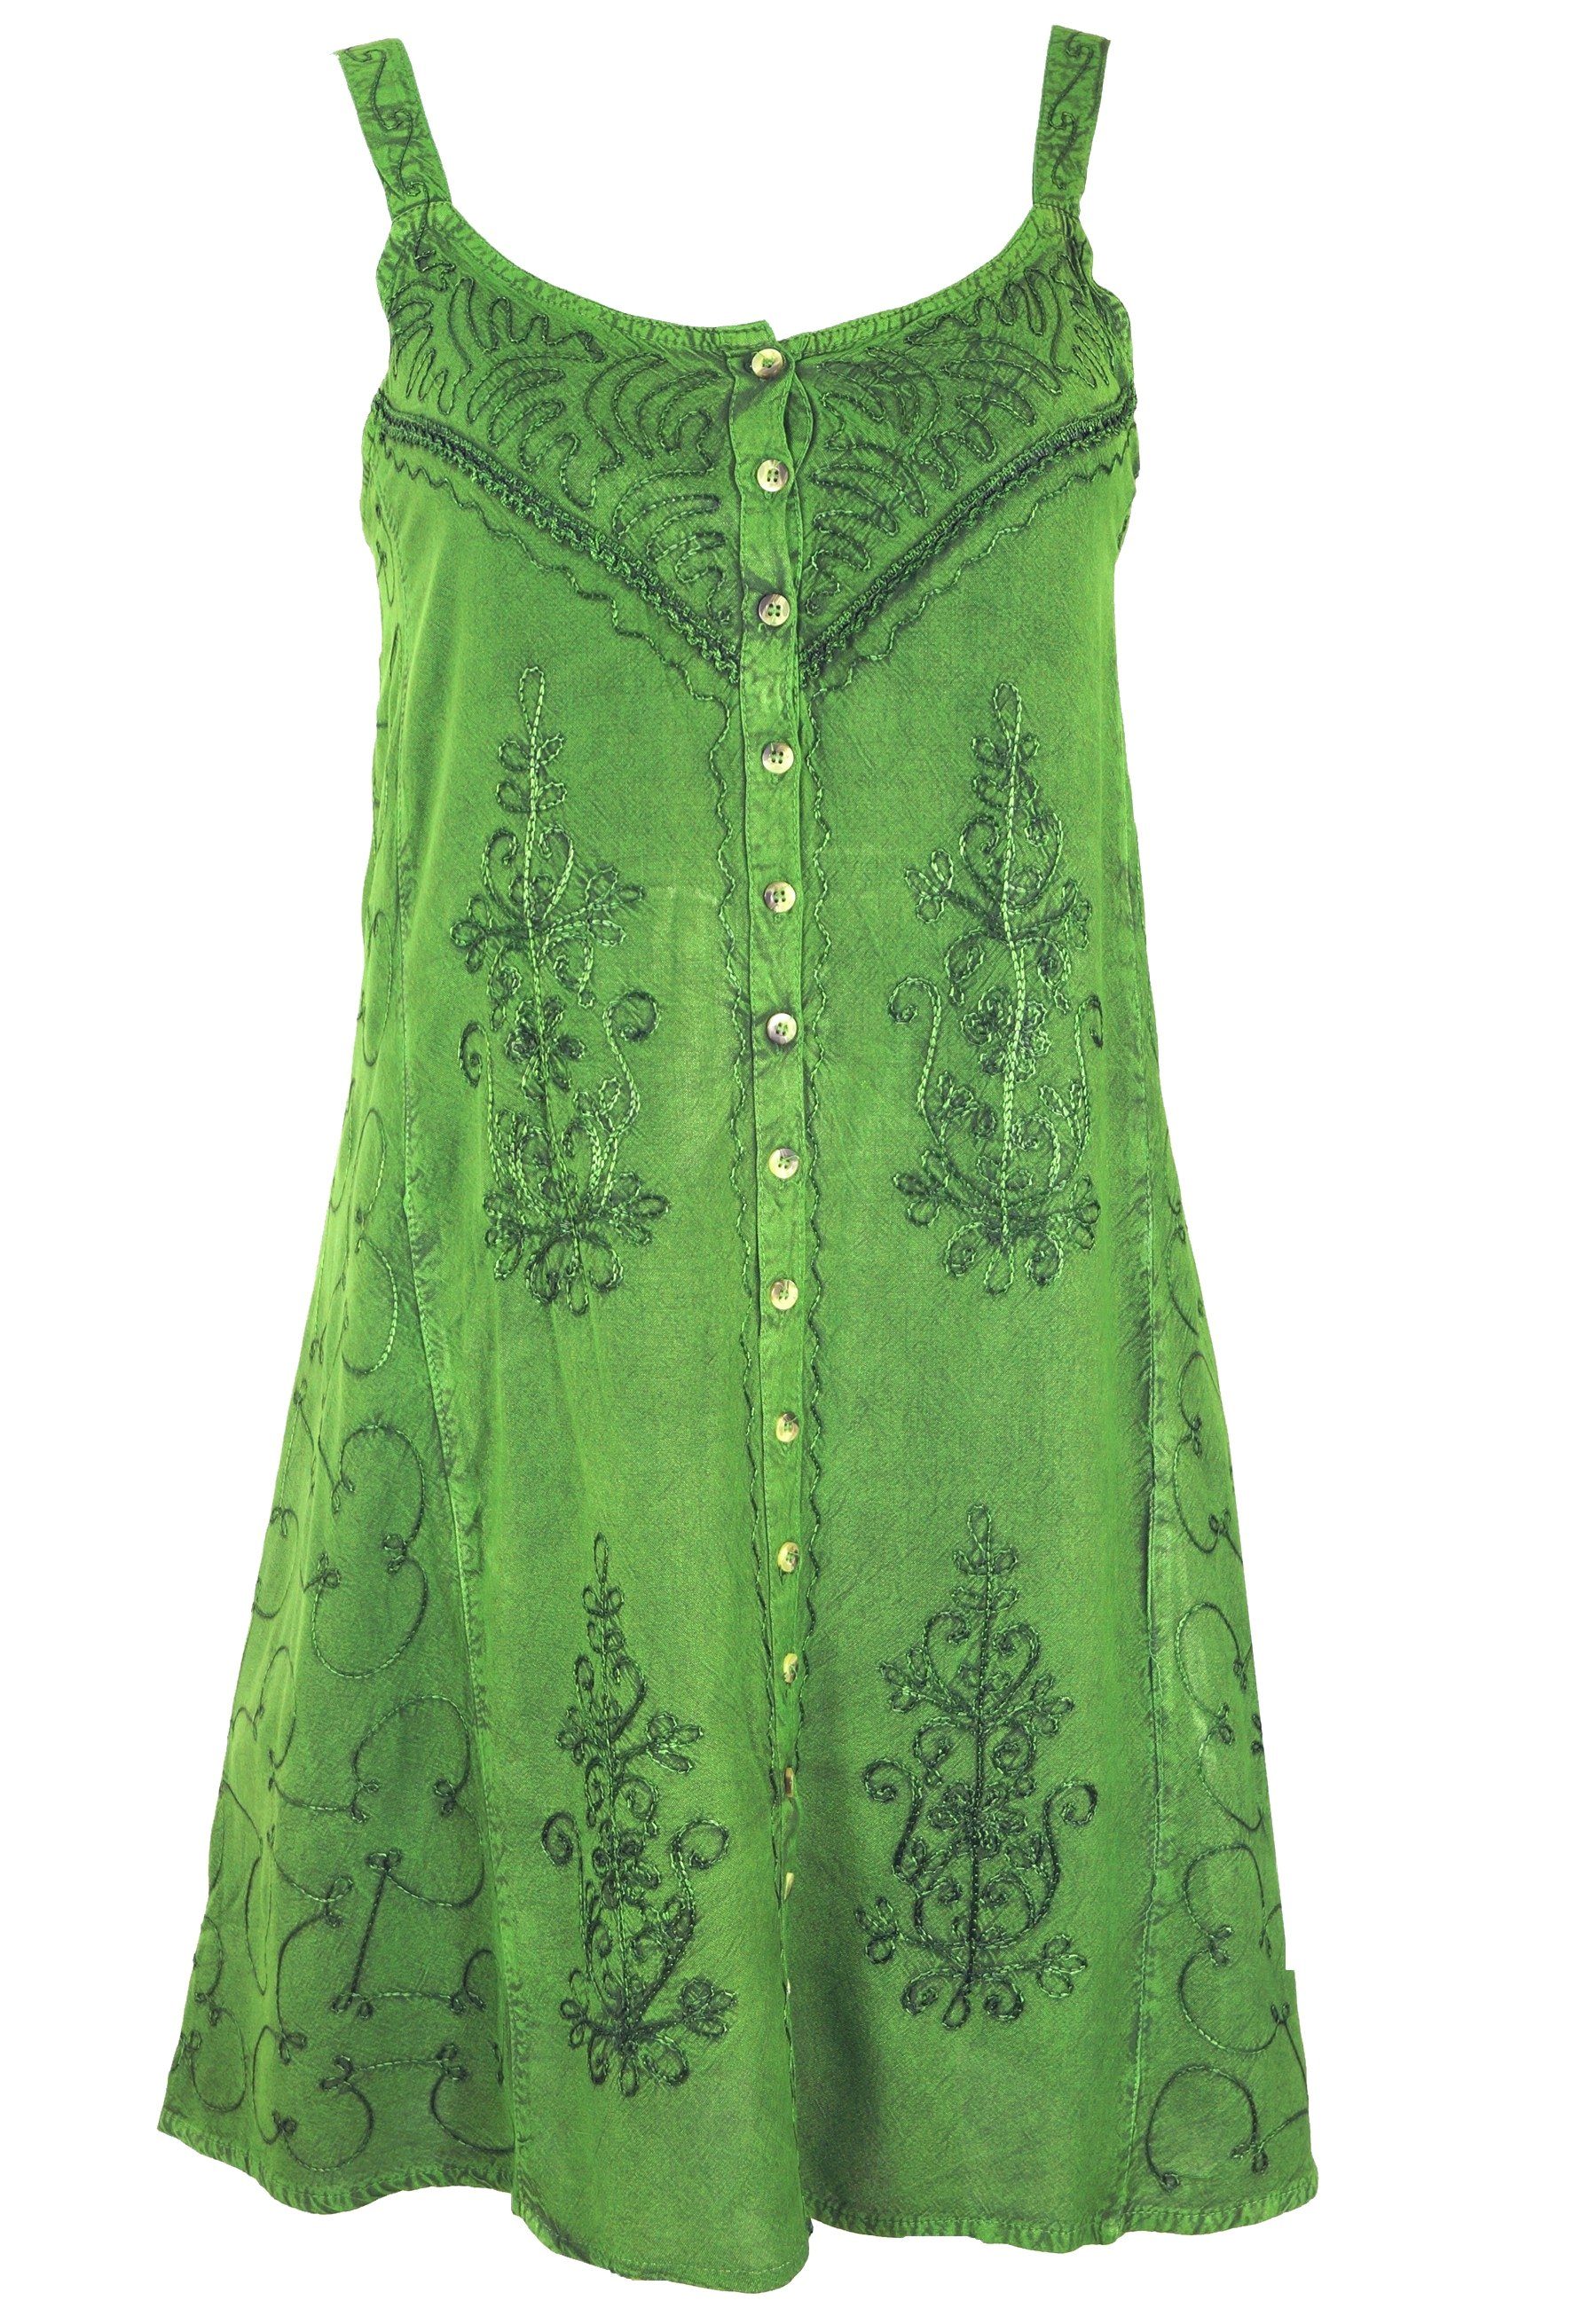 Guru-Shop Midikleid Besticktes indisches Kleid, Boho Minikleid -.. alternative Bekleidung grün Design 7